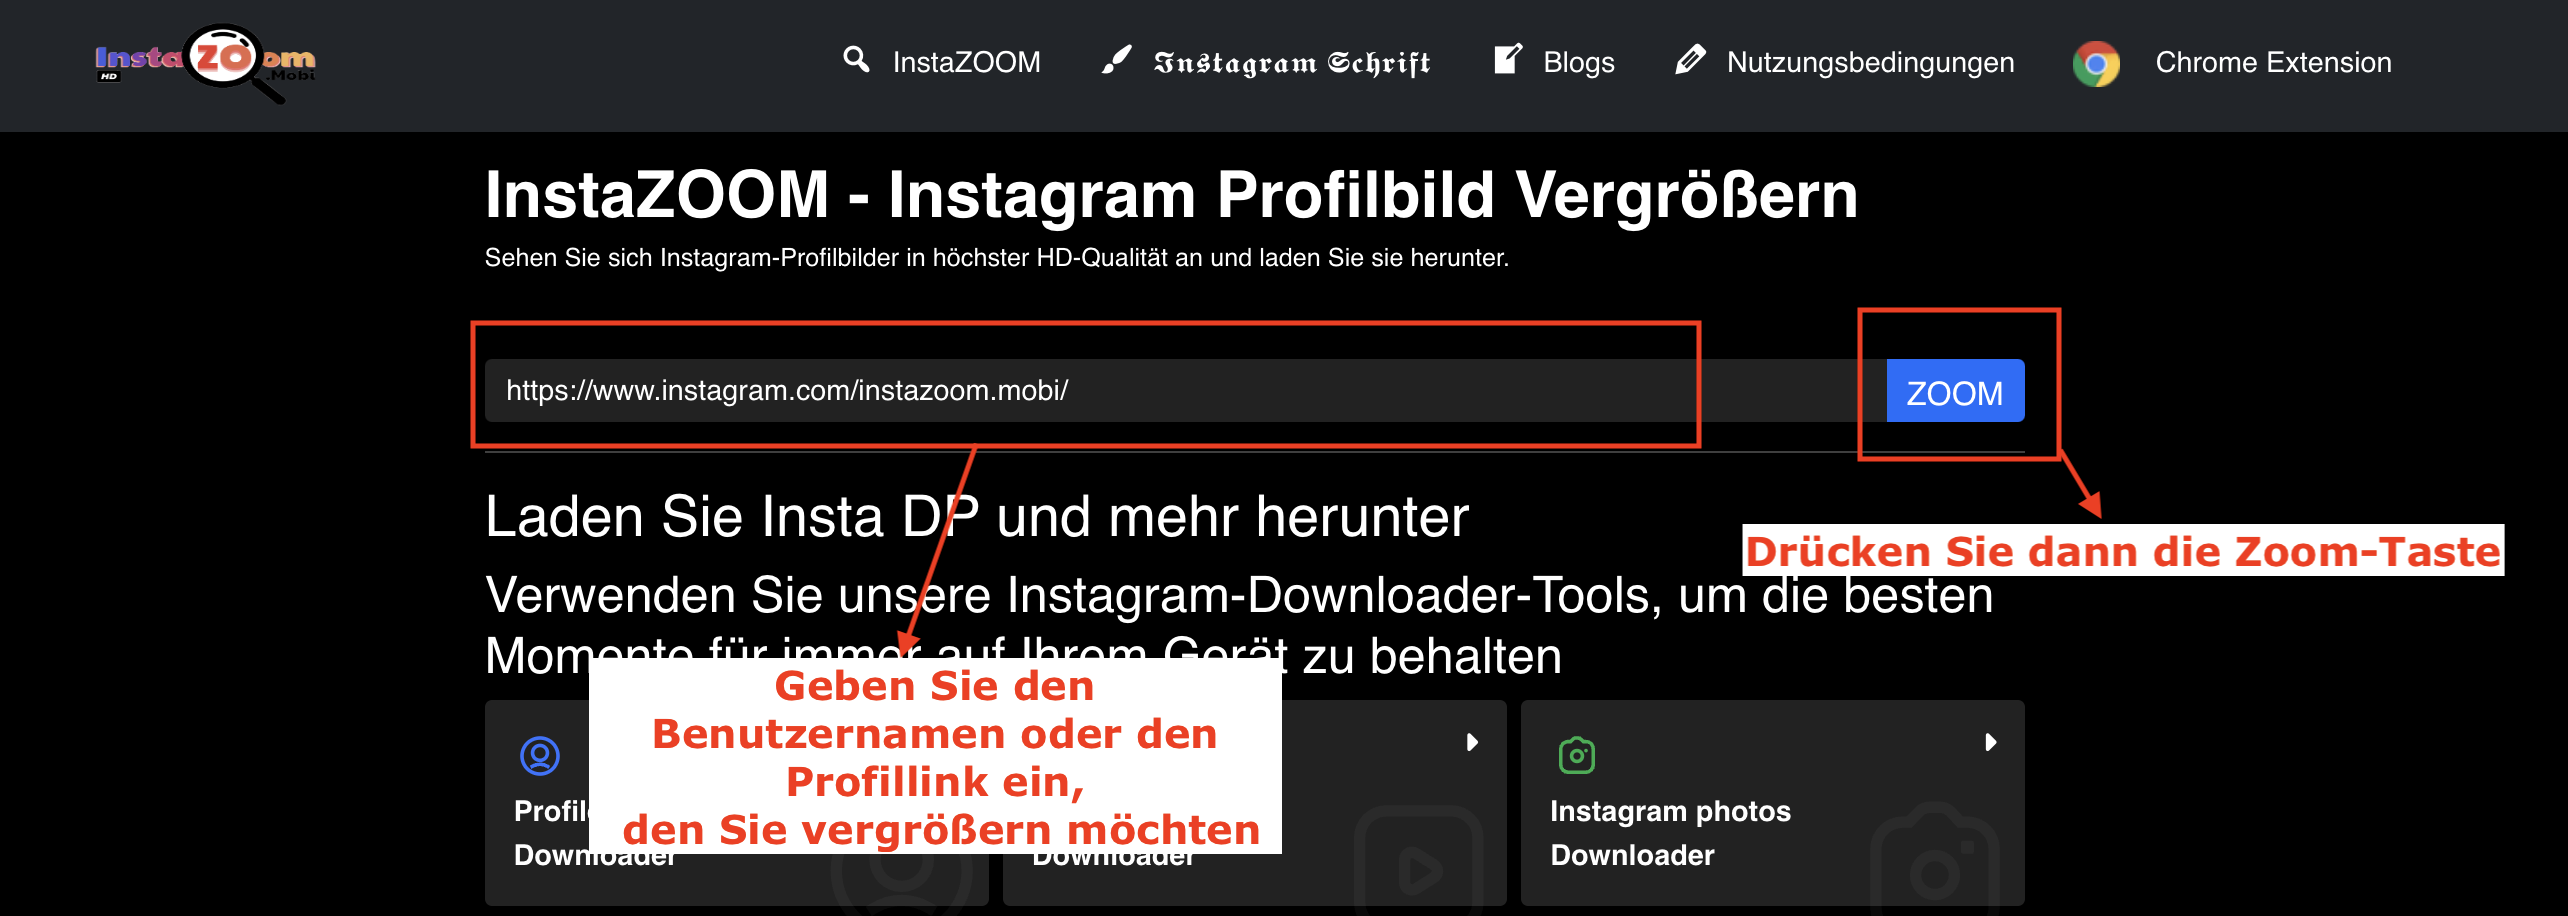 Paŝo 2: Enigu Instagram-URL aŭ uzantnomon en la serĉkeston de la retejo kaj poste premu la butonon "ZOOM".